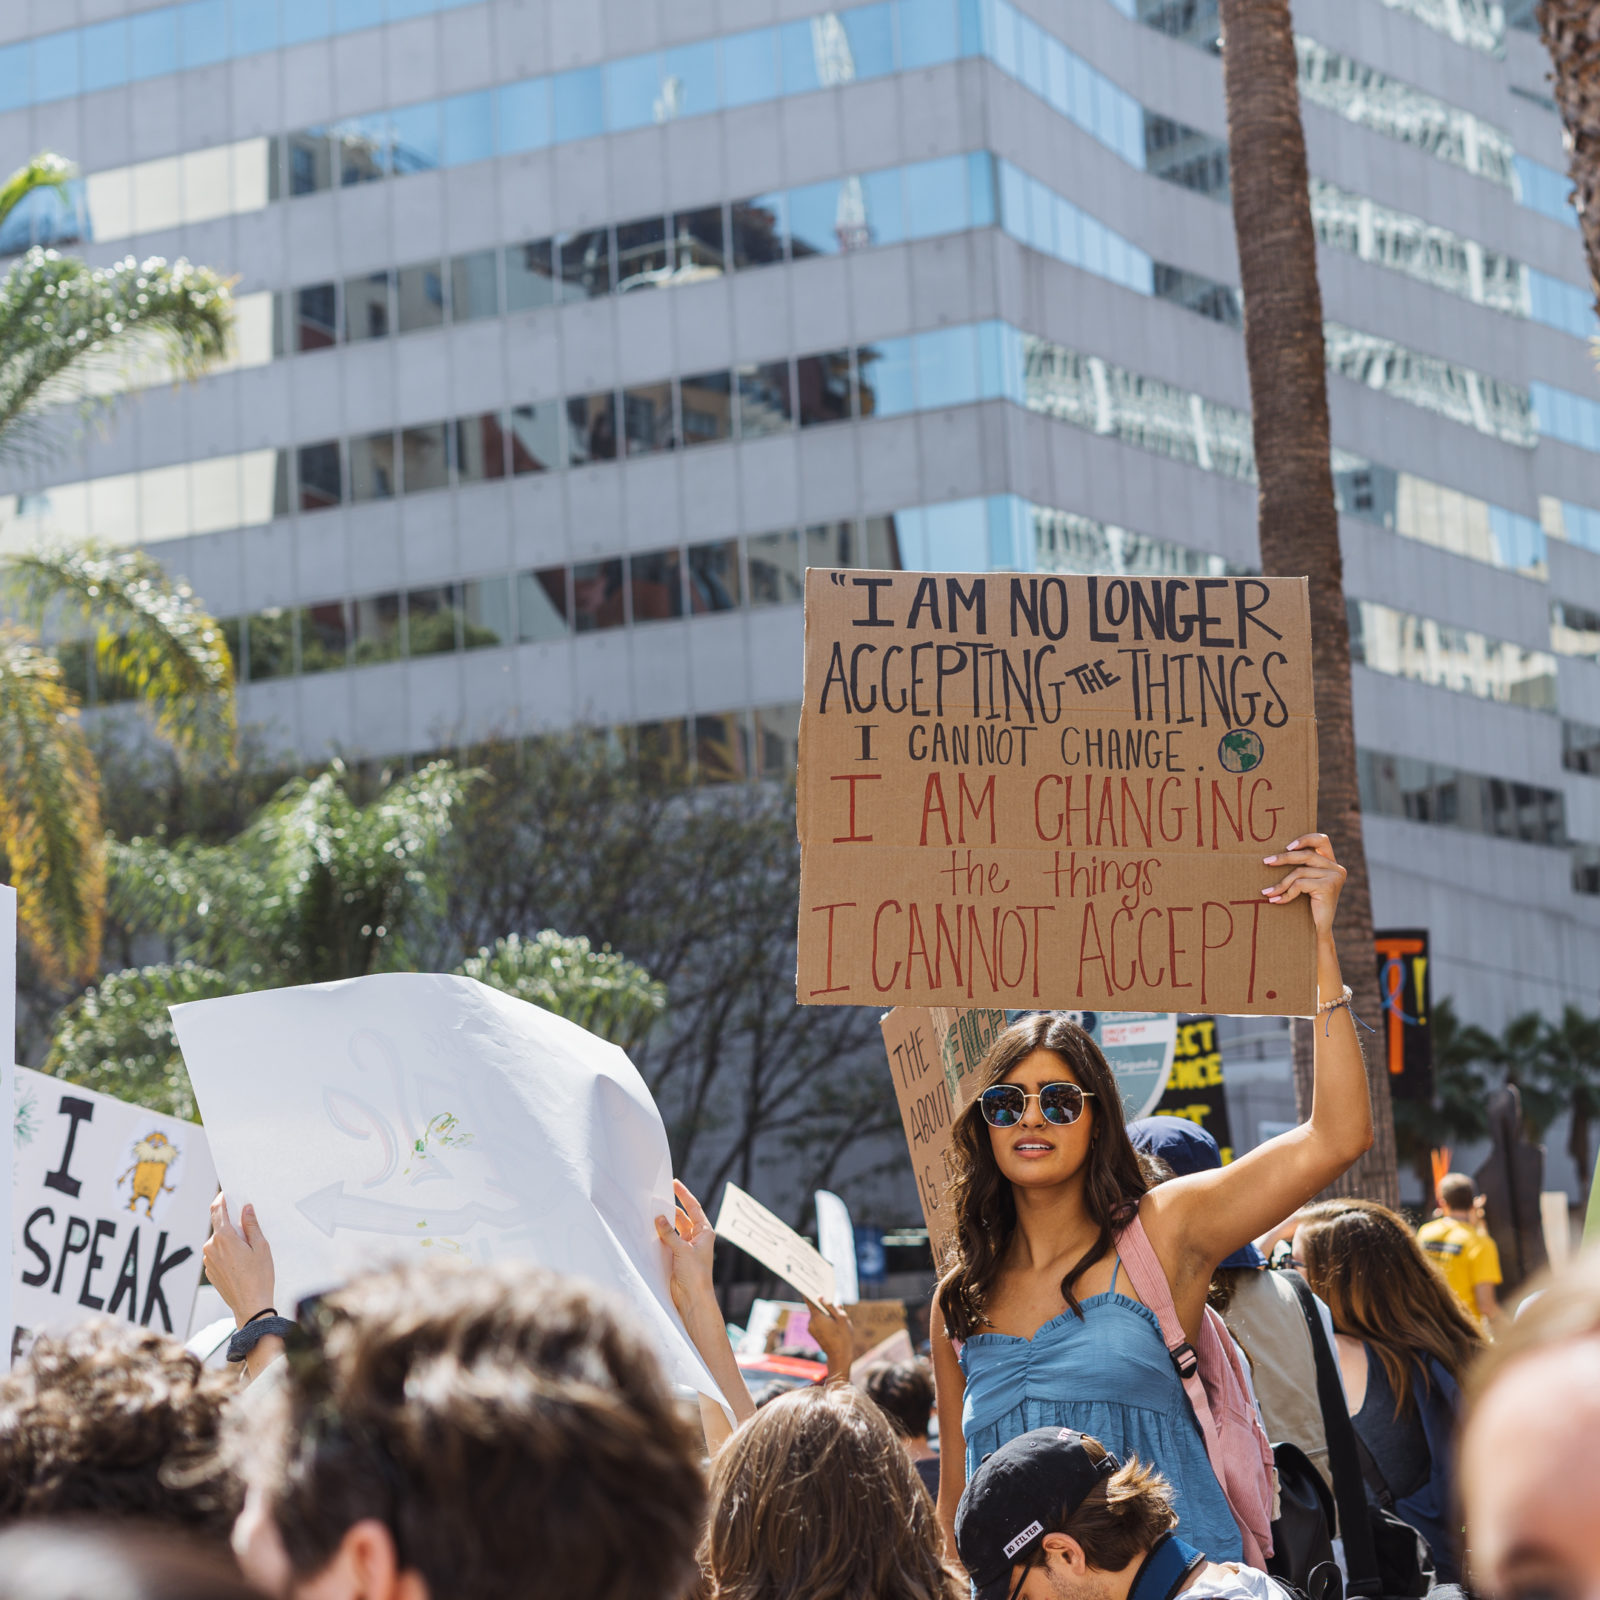 Un militant tient une pancarte disant "Je n'accepte plus les choses que je ne peux pas changer. Je change les choses que je n'accepte plus" lors de la grève pour le climat de septembre 2019.